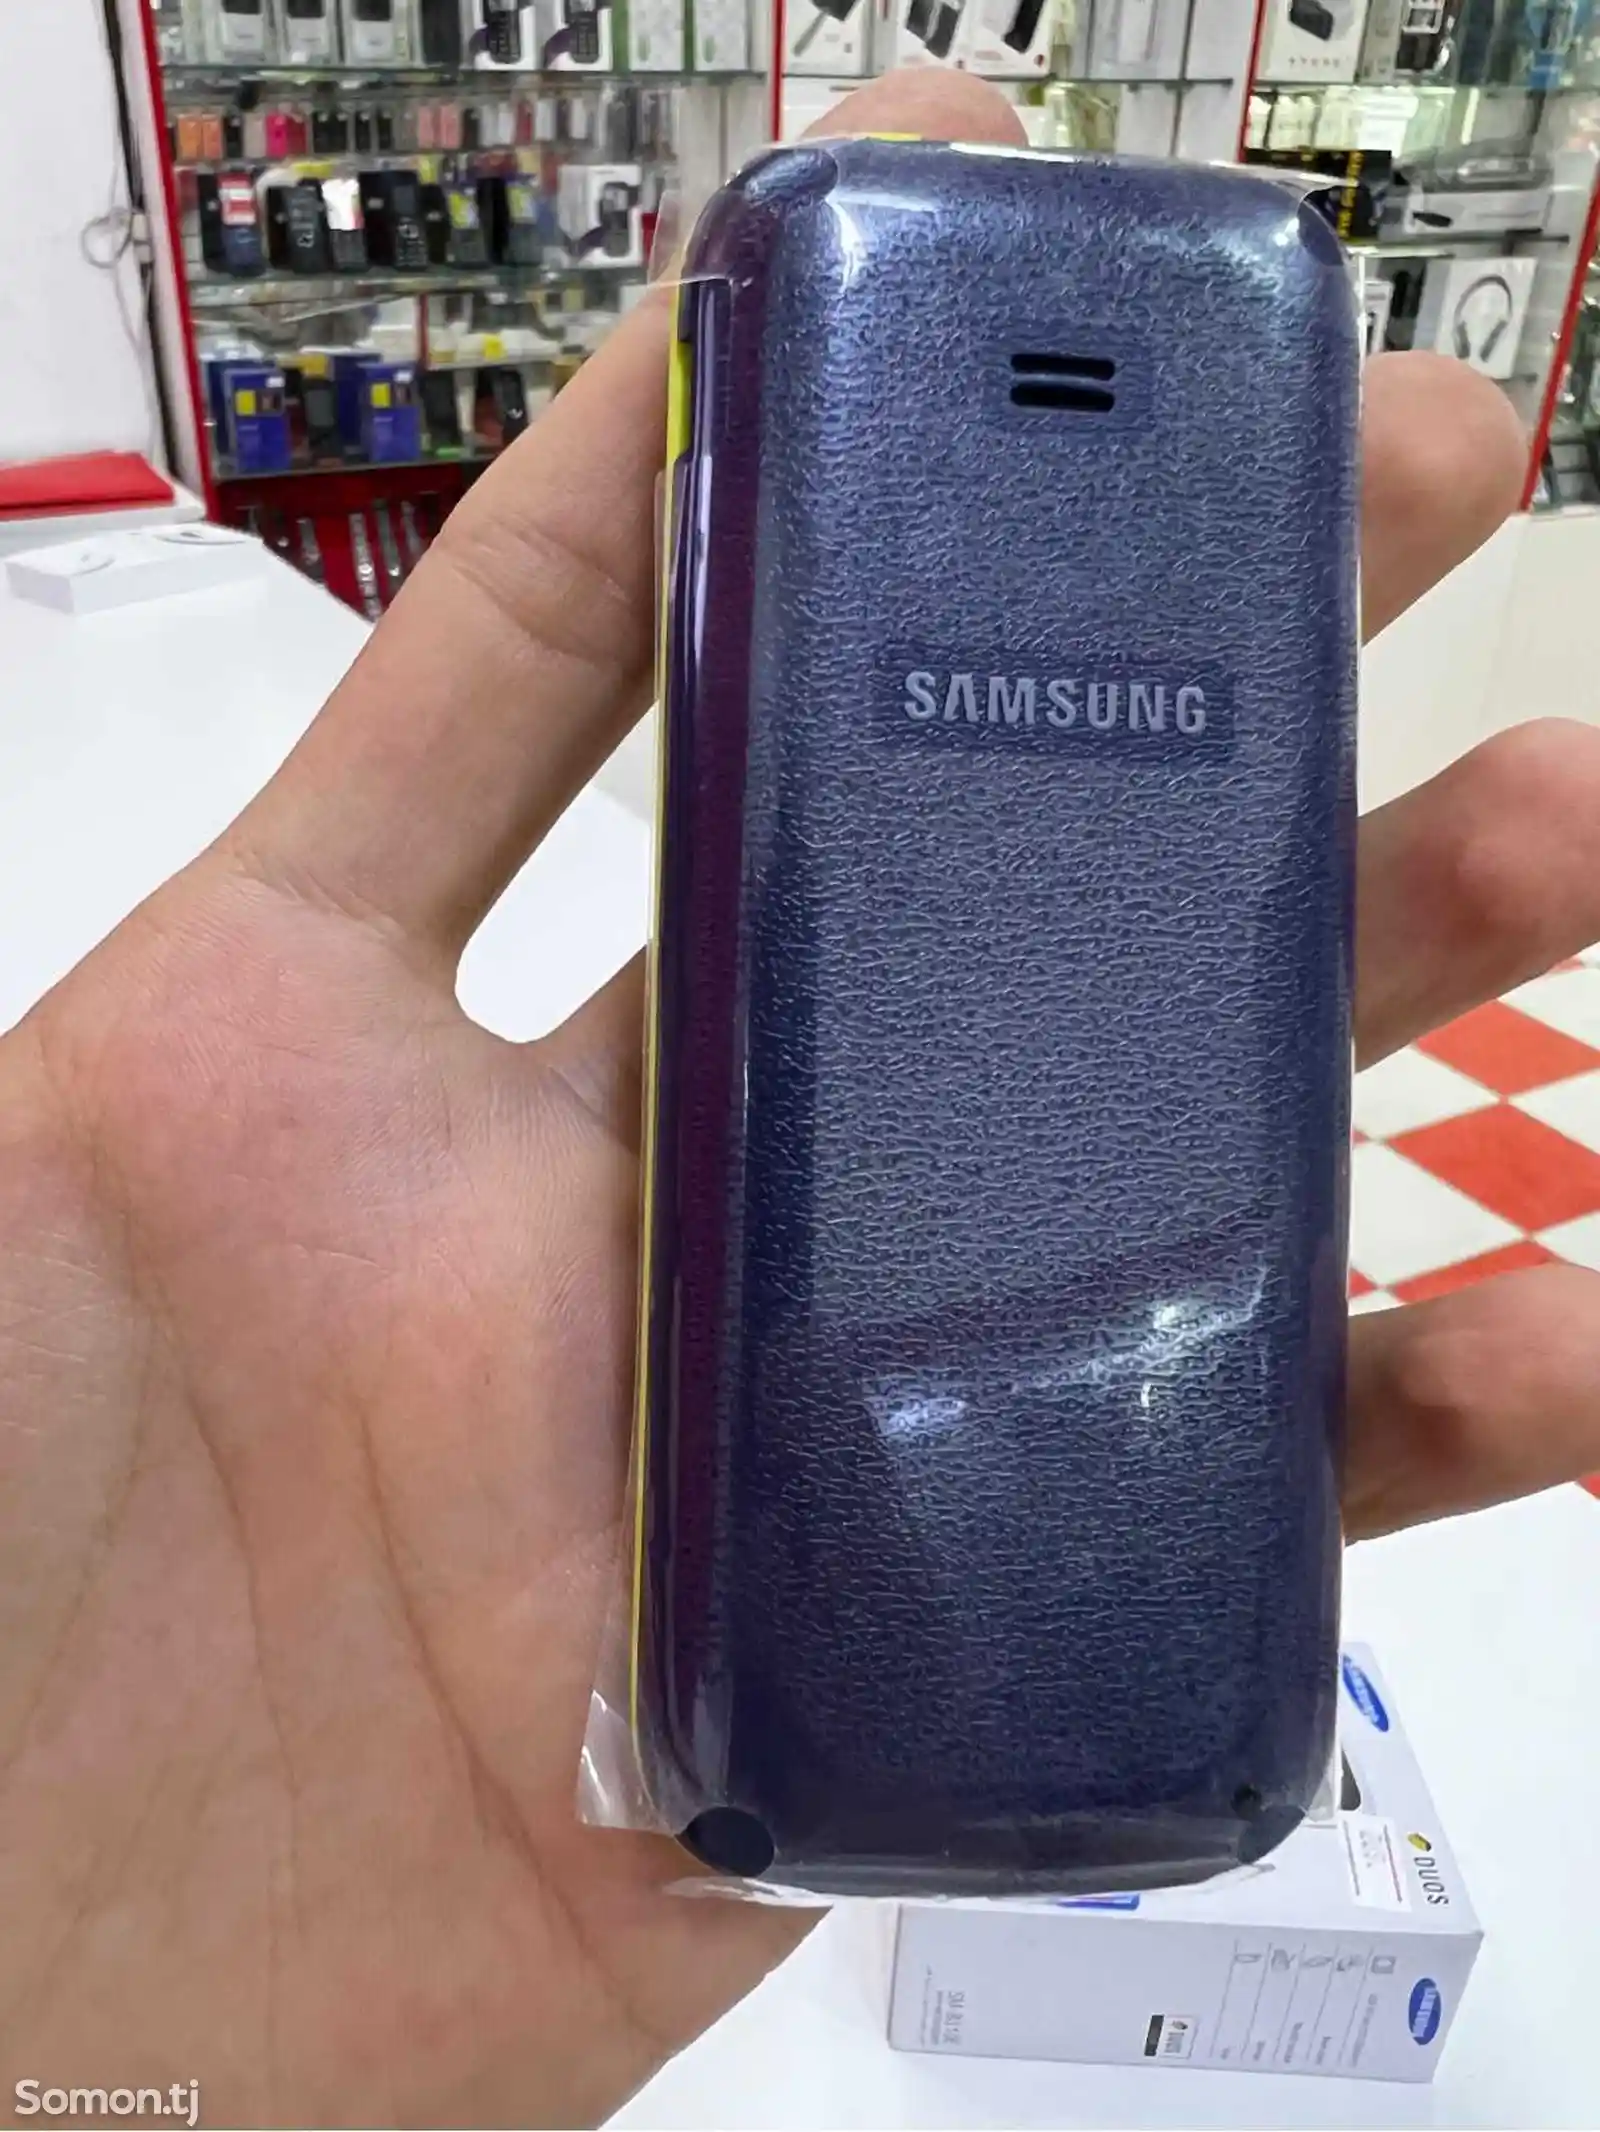 Samsung B310-4